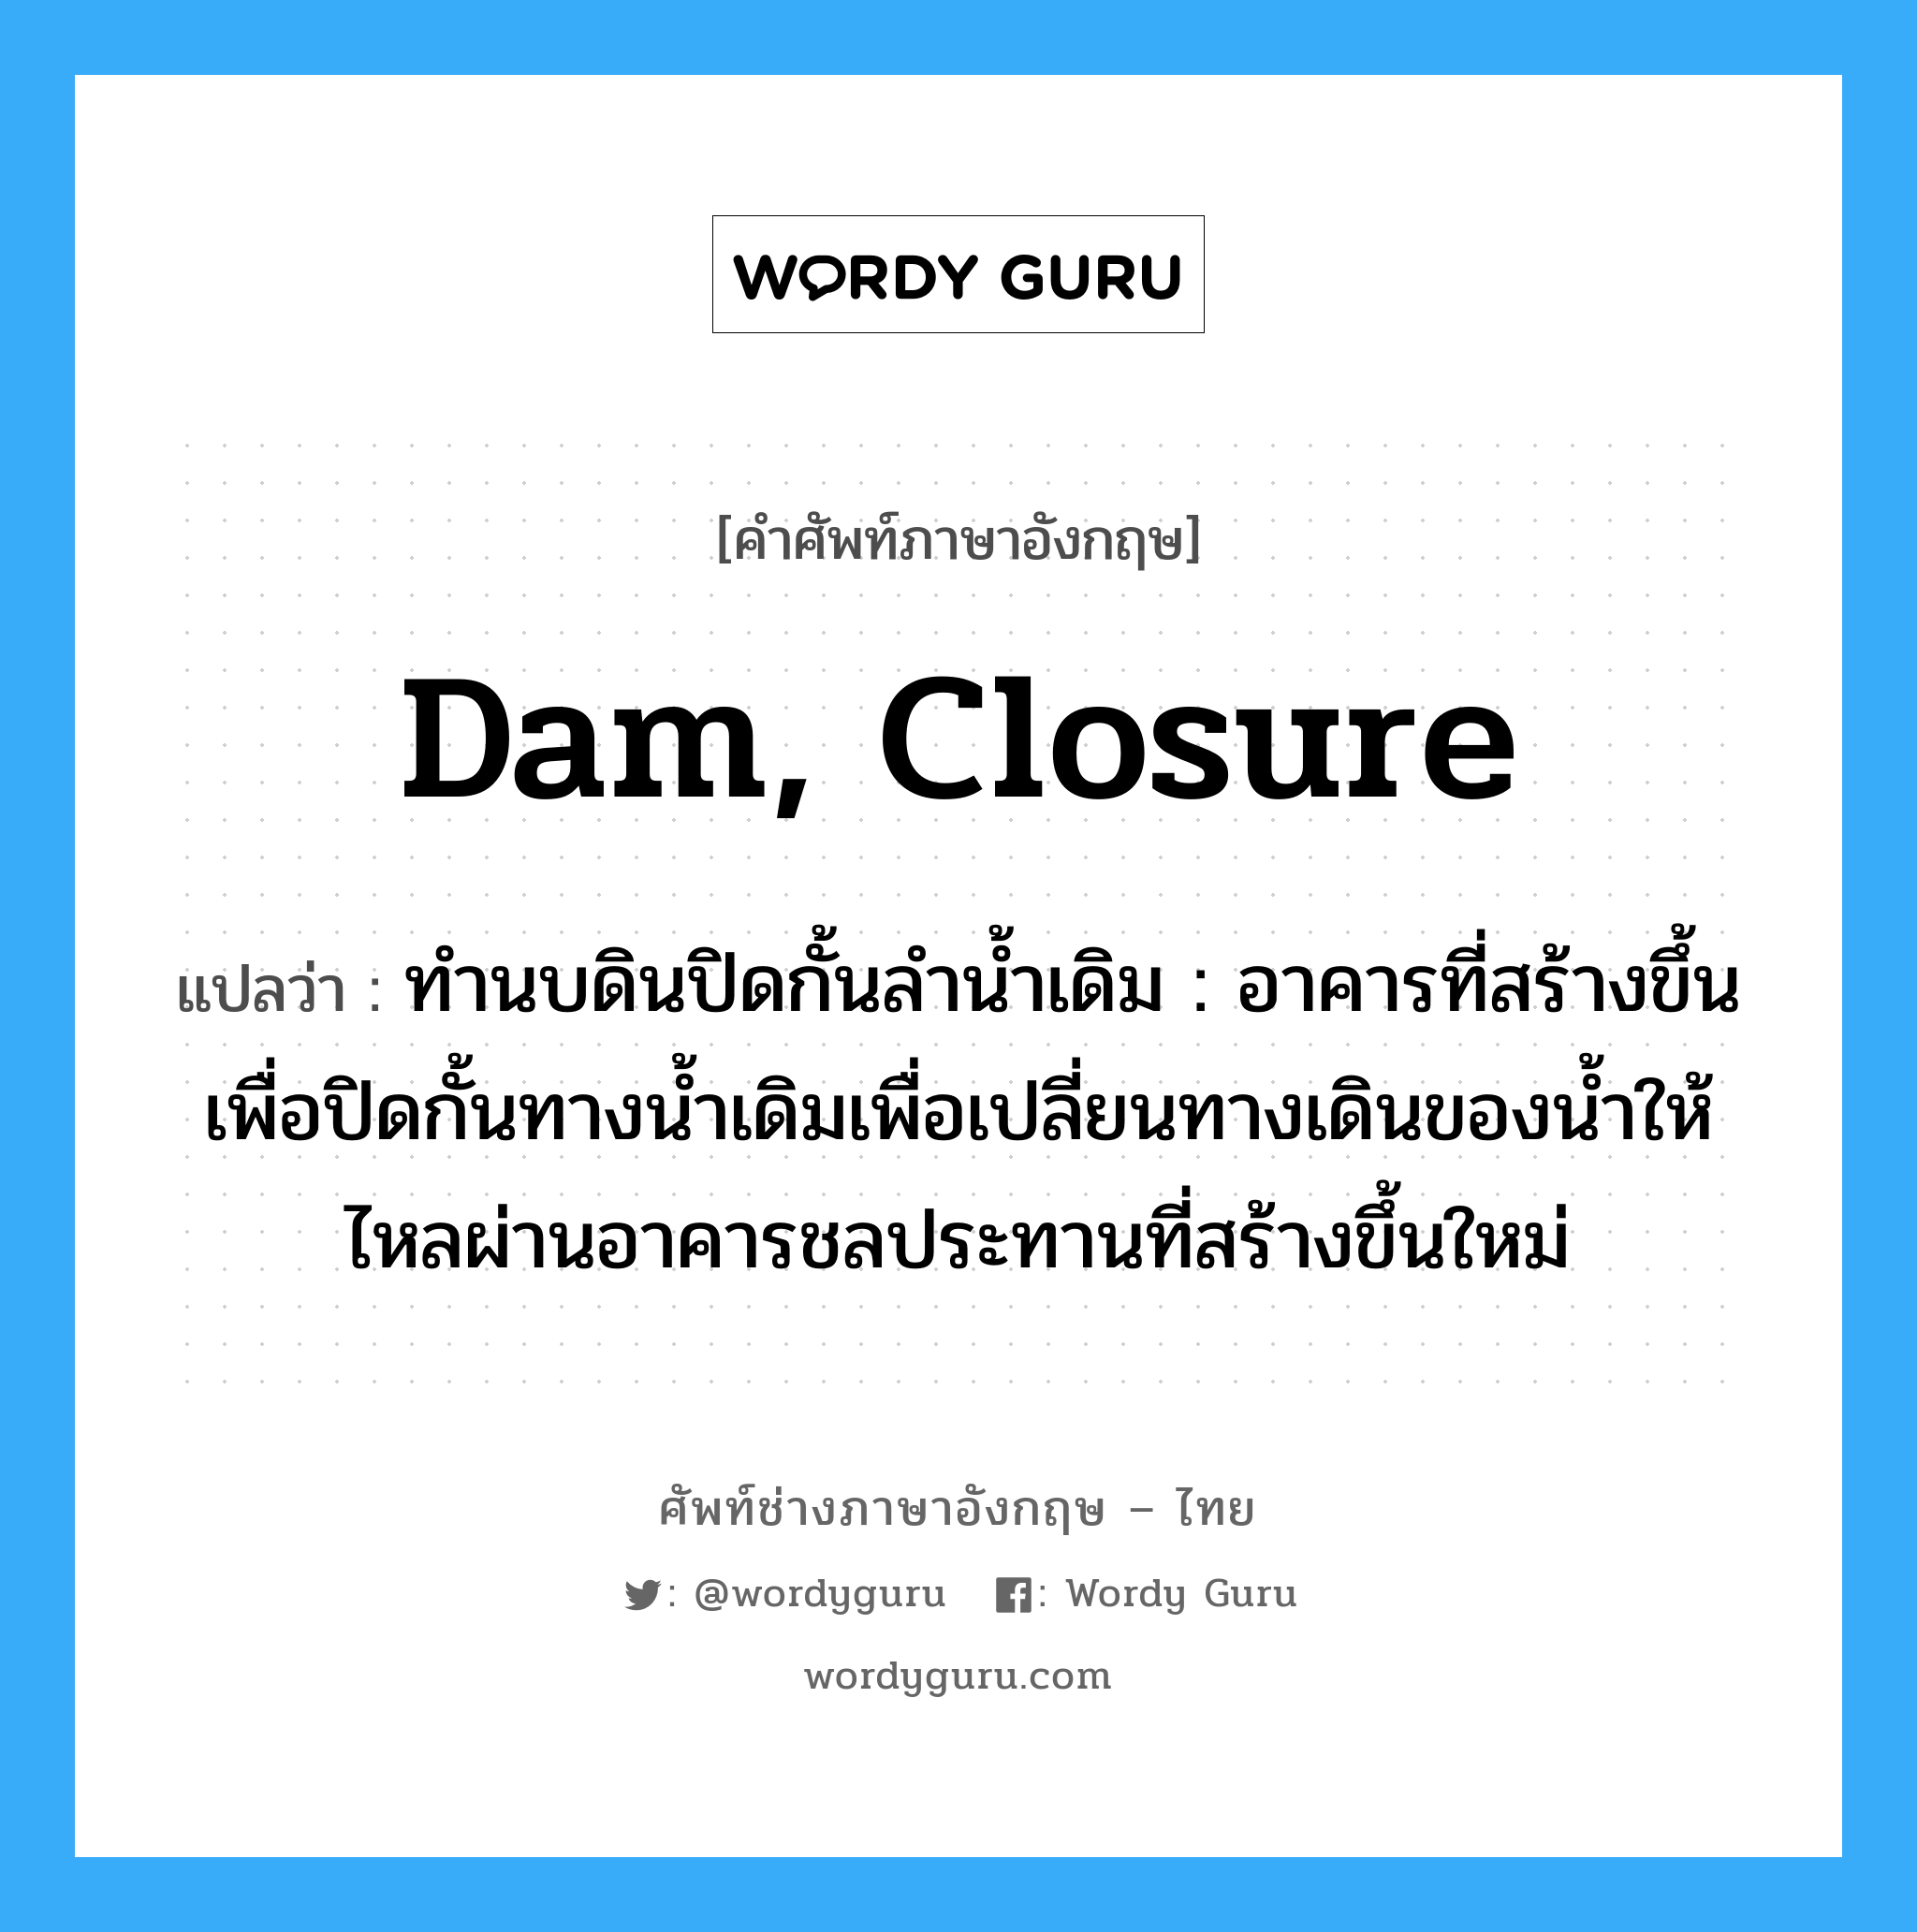 dam, closure แปลว่า?, คำศัพท์ช่างภาษาอังกฤษ - ไทย dam, closure คำศัพท์ภาษาอังกฤษ dam, closure แปลว่า ทำนบดินปิดกั้นลำน้ำเดิม : อาคารที่สร้างขึ้นเพื่อปิดกั้นทางน้ำเดิมเพื่อเปลี่ยนทางเดินของน้ำให้ไหลผ่านอาคารชลประทานที่สร้างขึ้นใหม่